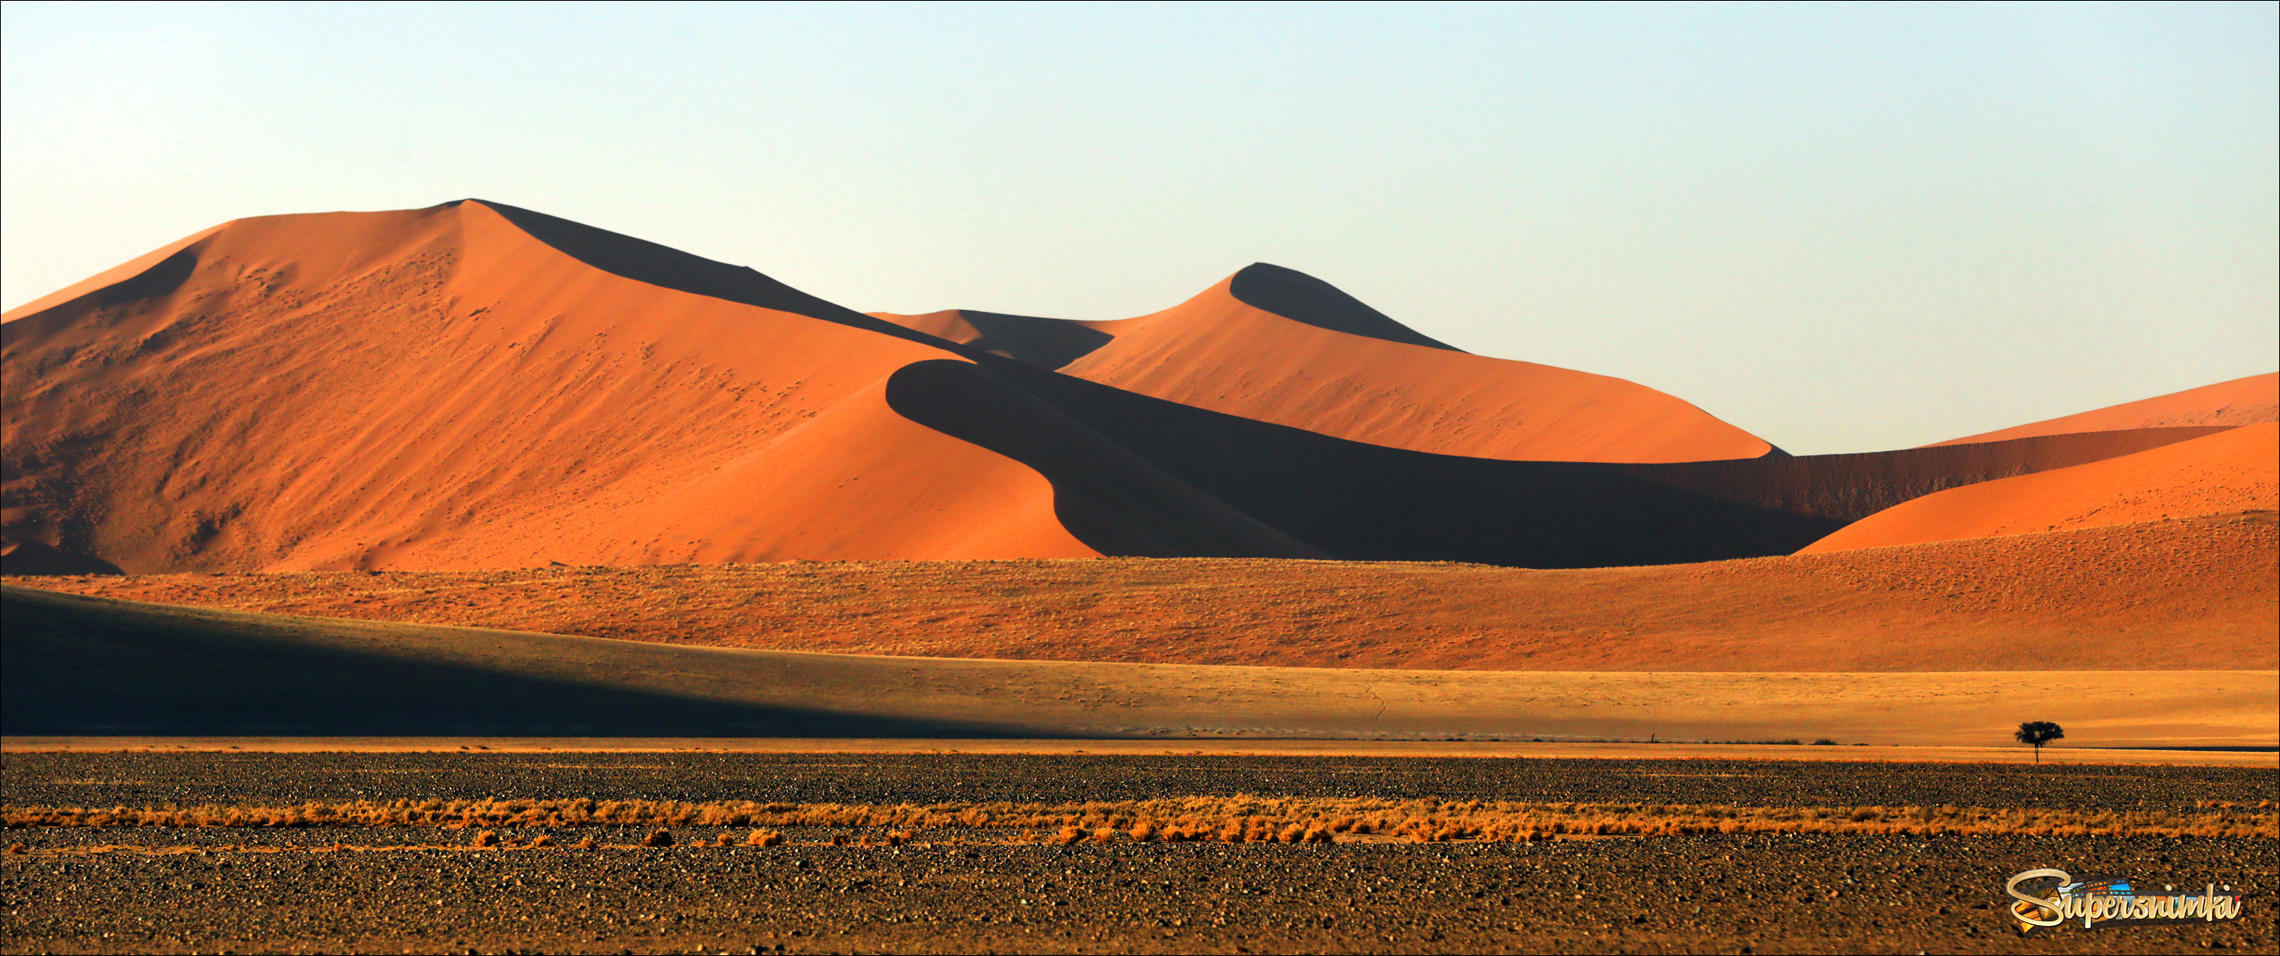 Дюны пустыни Намиб в утреннем освещении